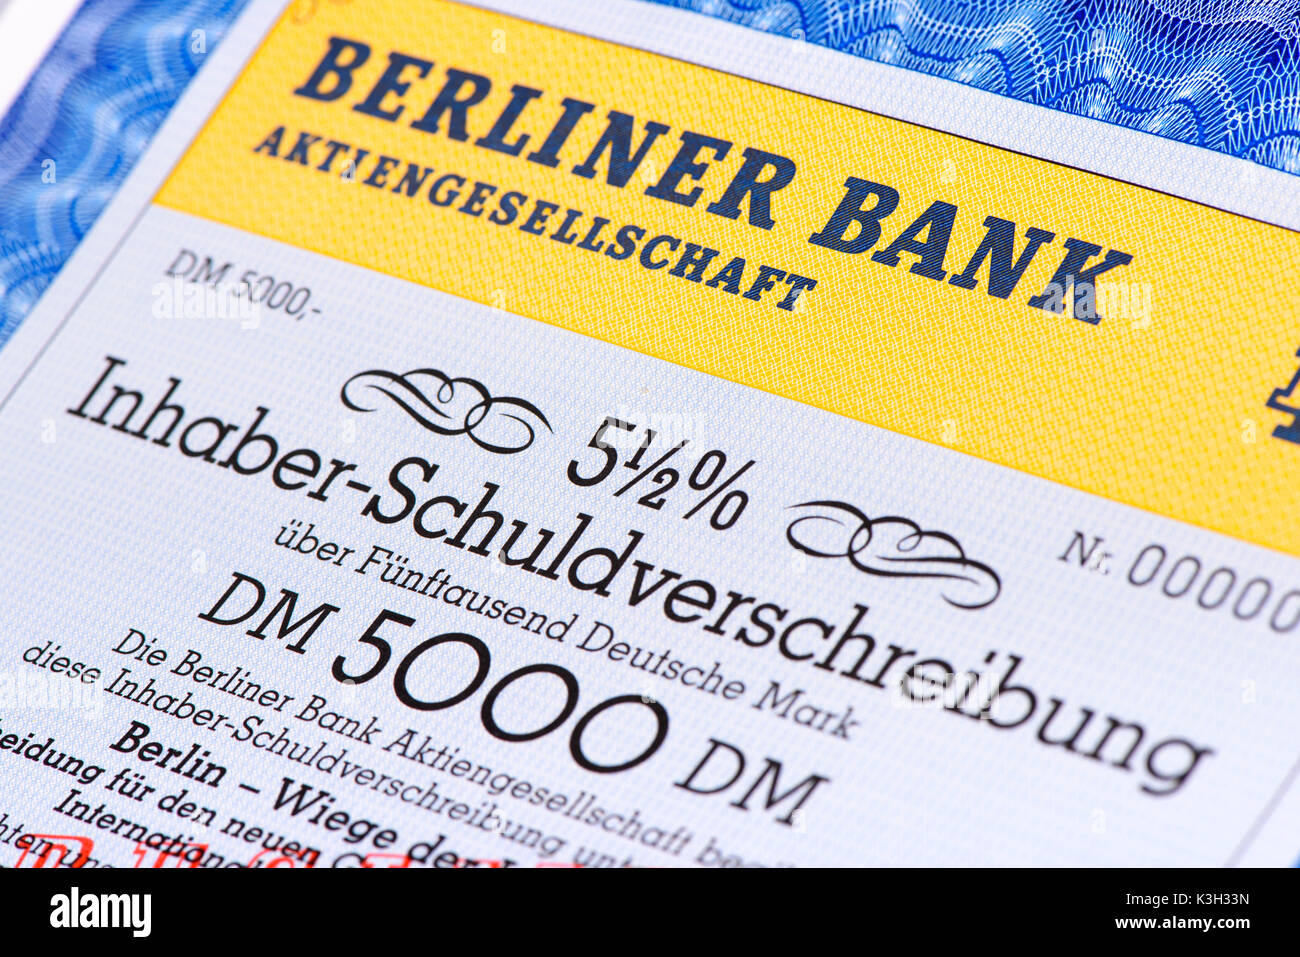 Obbligazioni al portatore della banca di Berlino Foto Stock